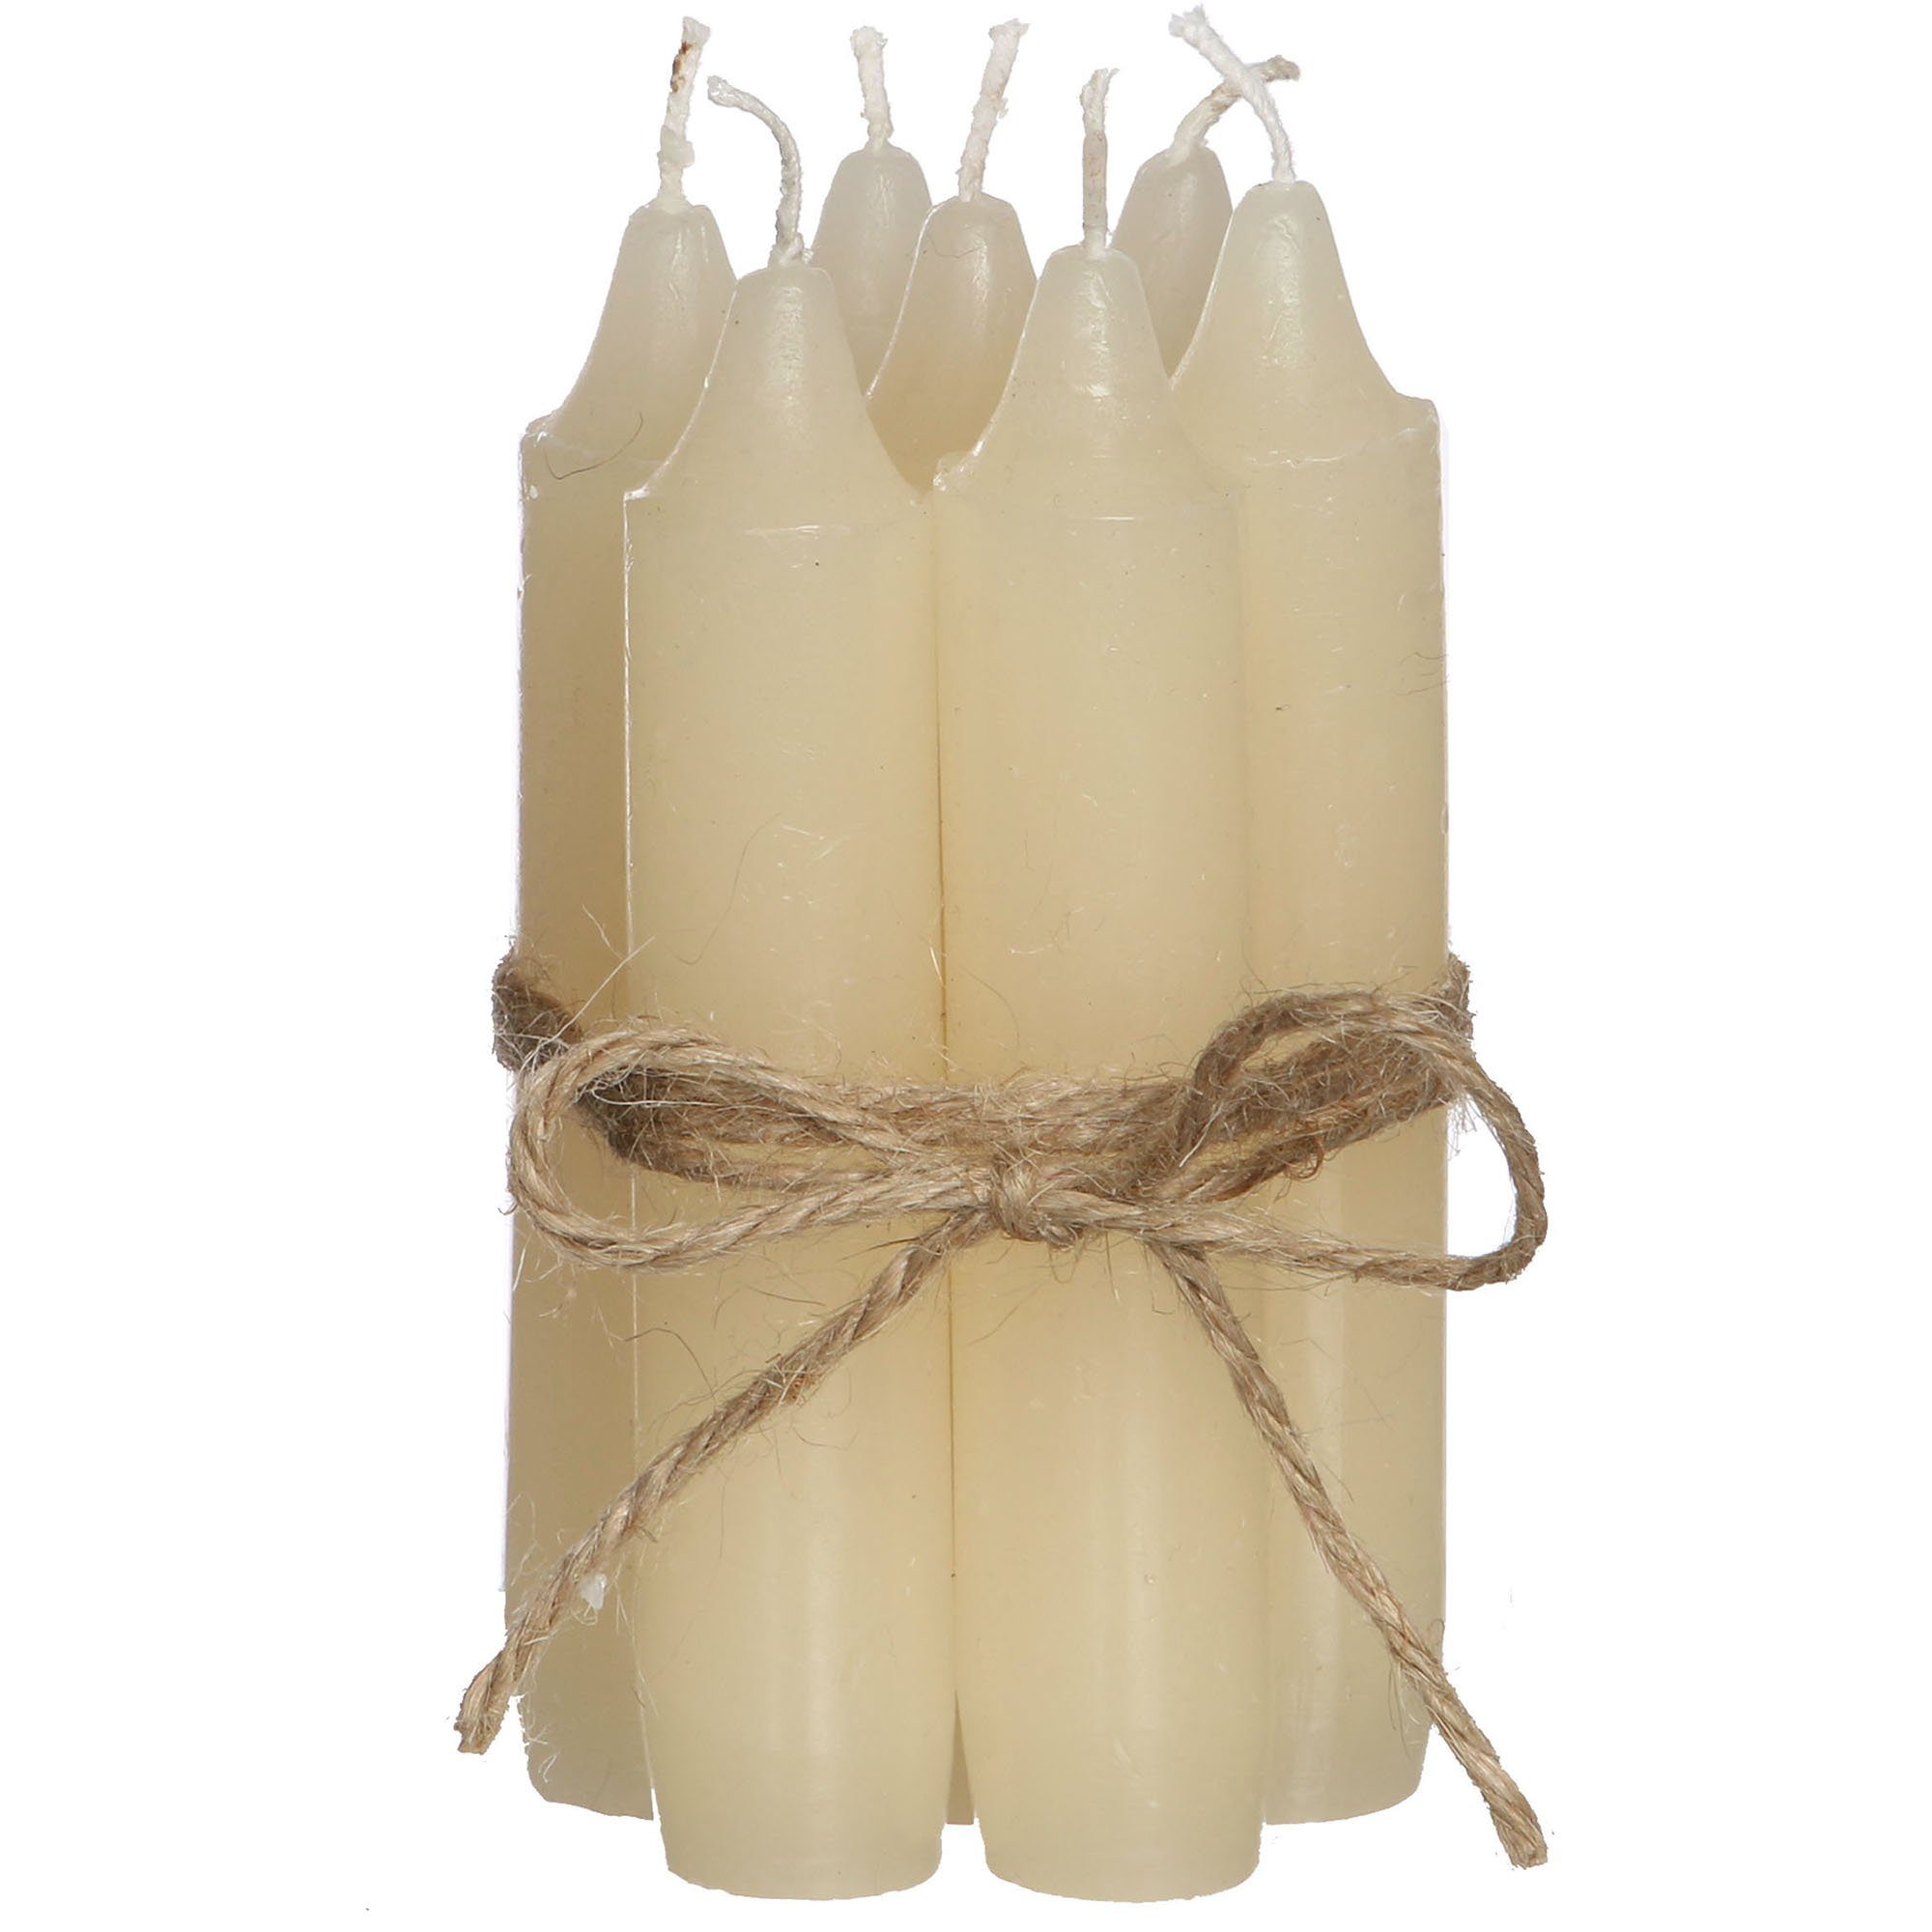 Annastore Spitzkerze 7-tlg. Set Kerzen H 11 cm - Stabkerzen für Flaschen und Vasen